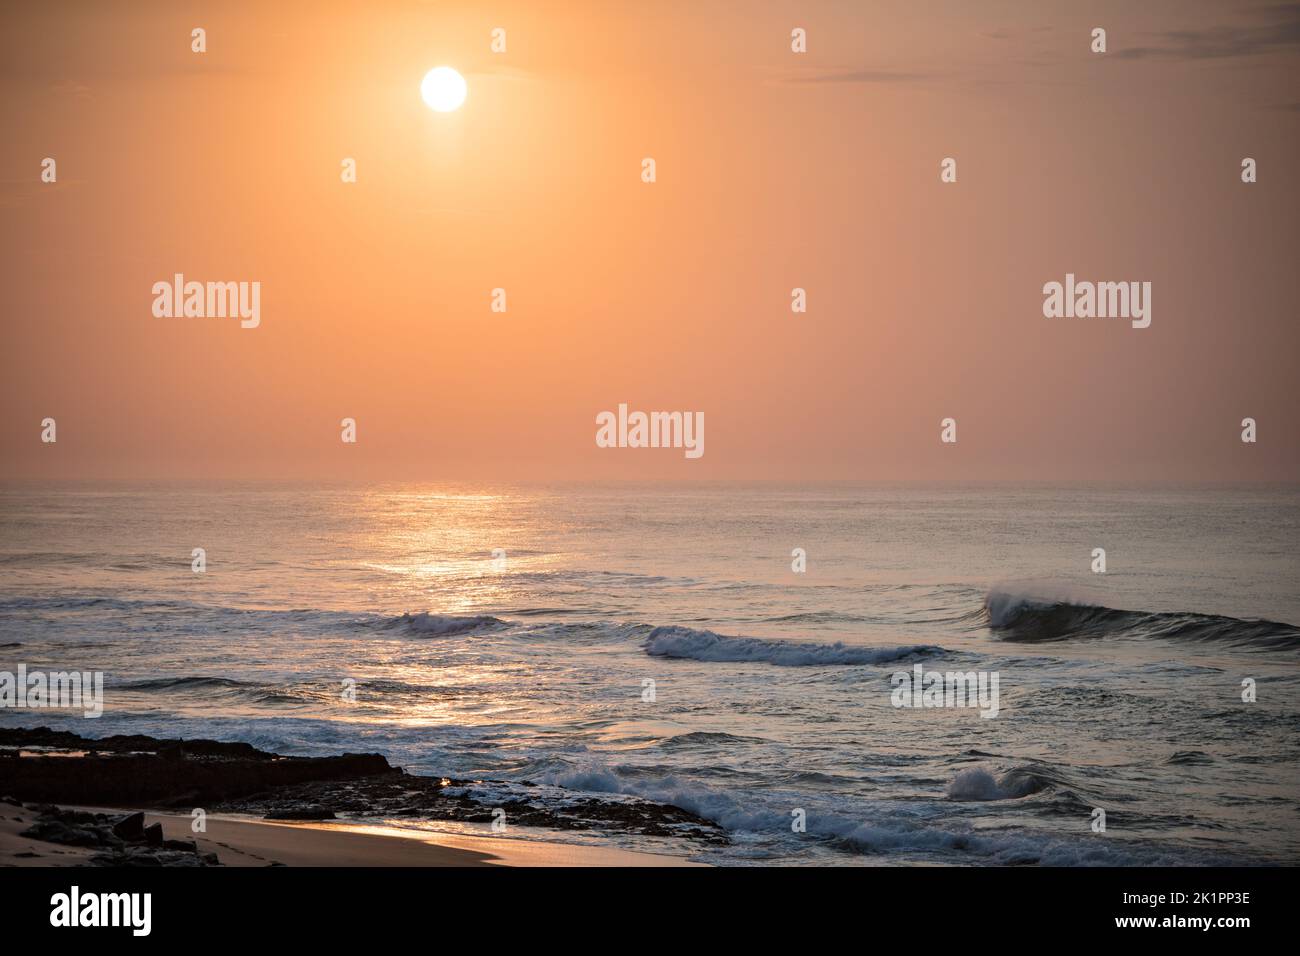 Le magnifique coucher de soleil sur la plage Banque D'Images